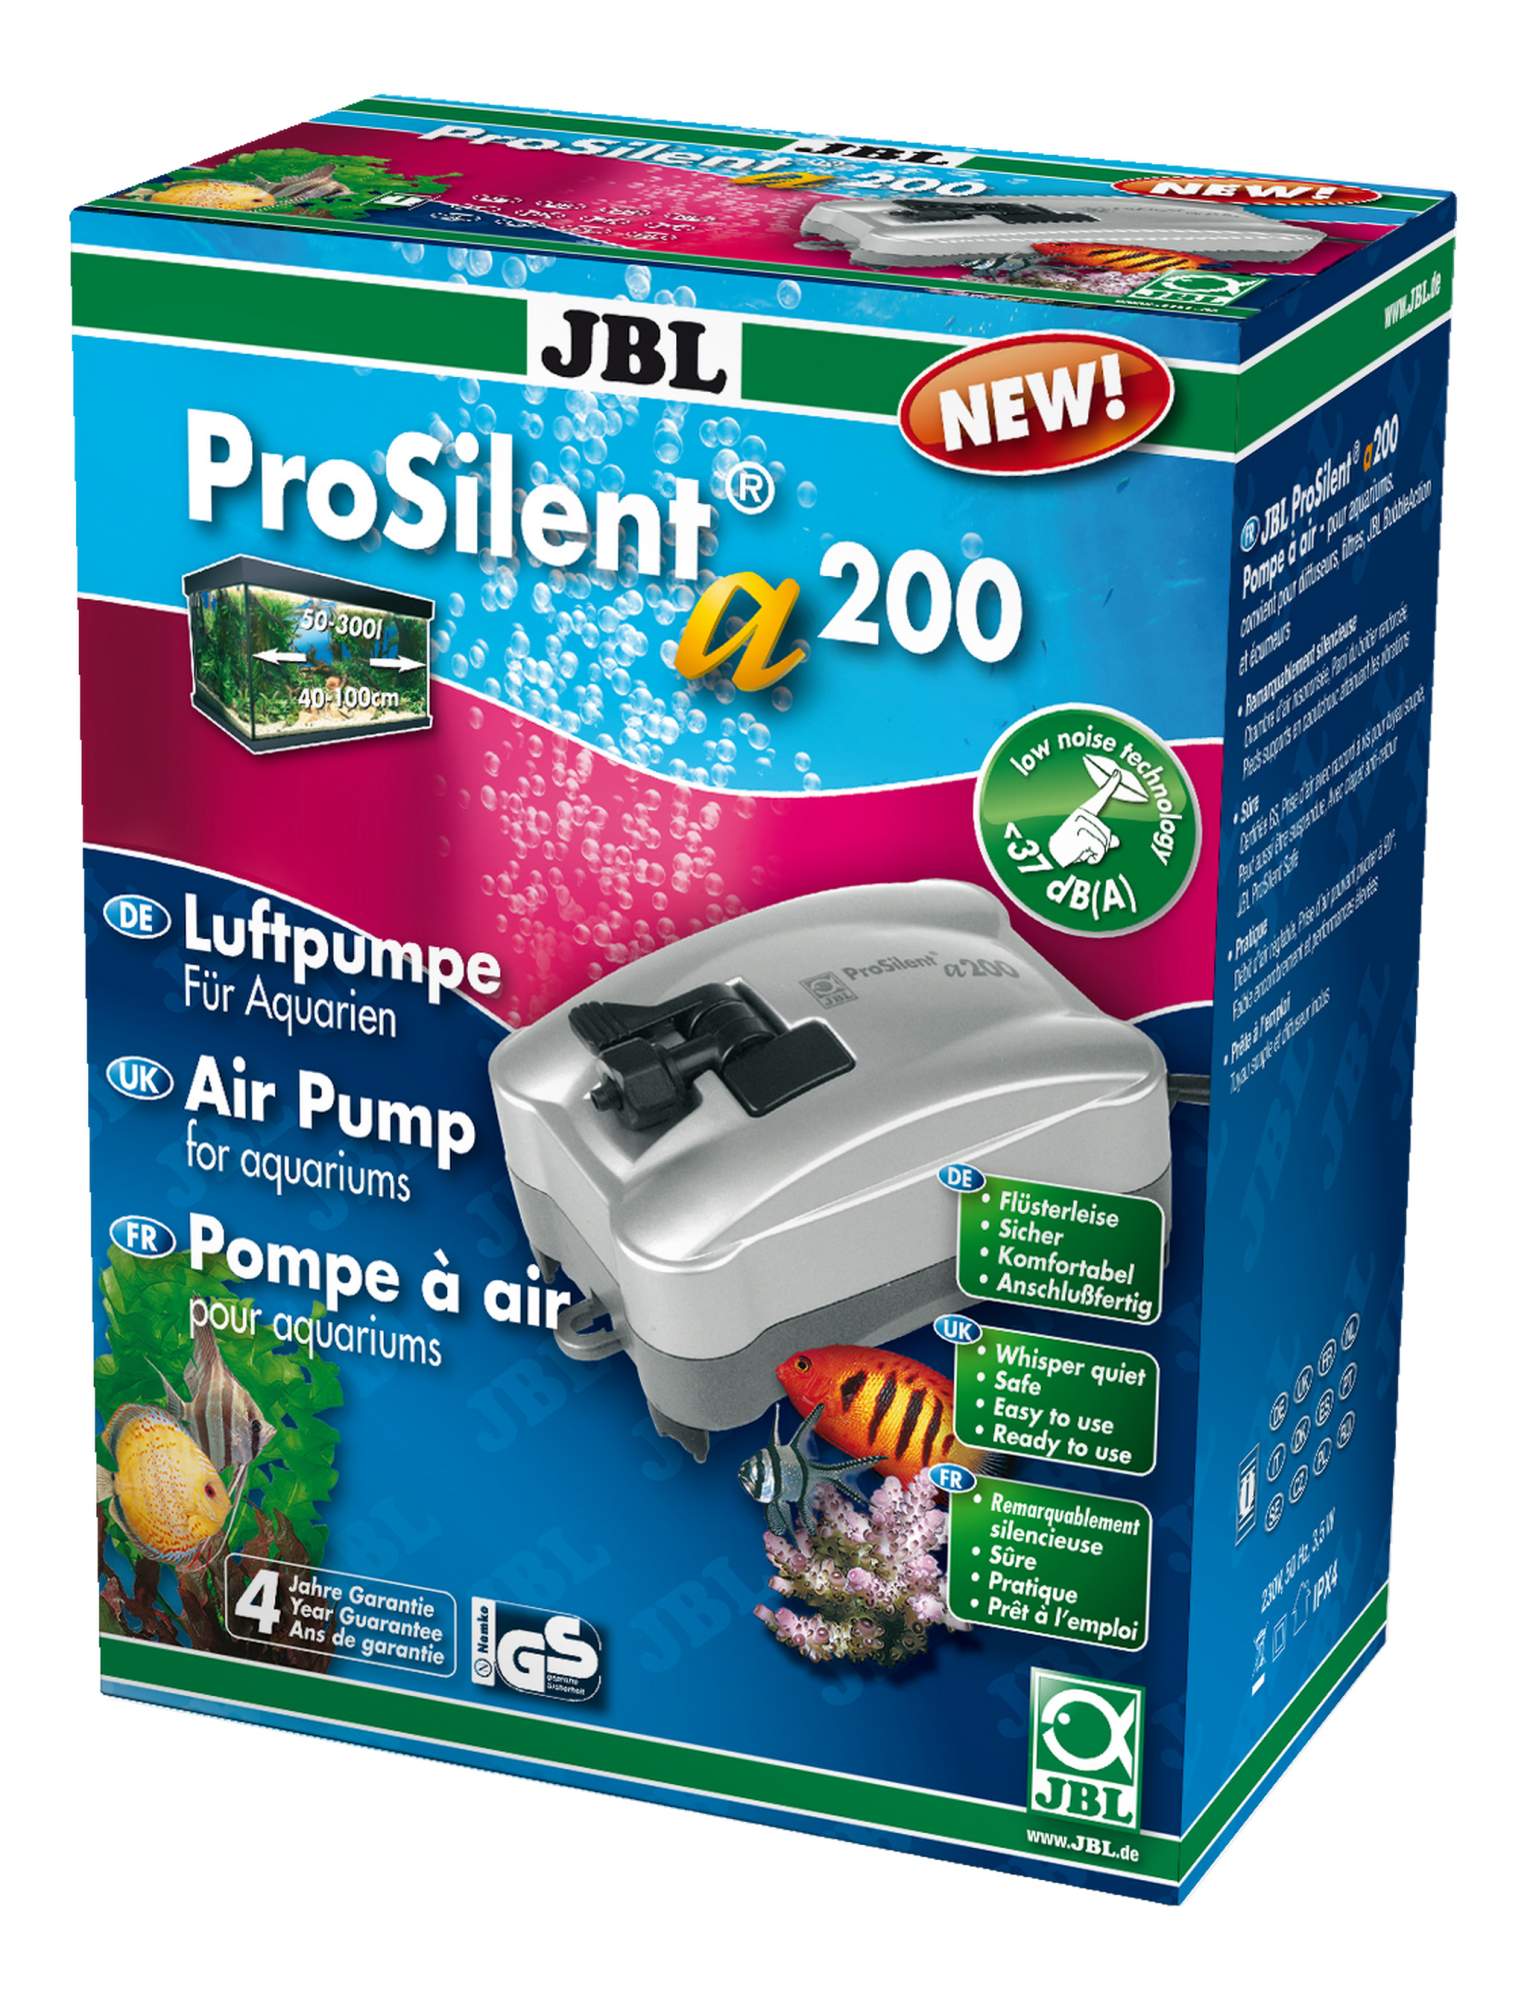 Компрессор для аквариума JBL ProSilent a200 одноканальный, 200 л/час